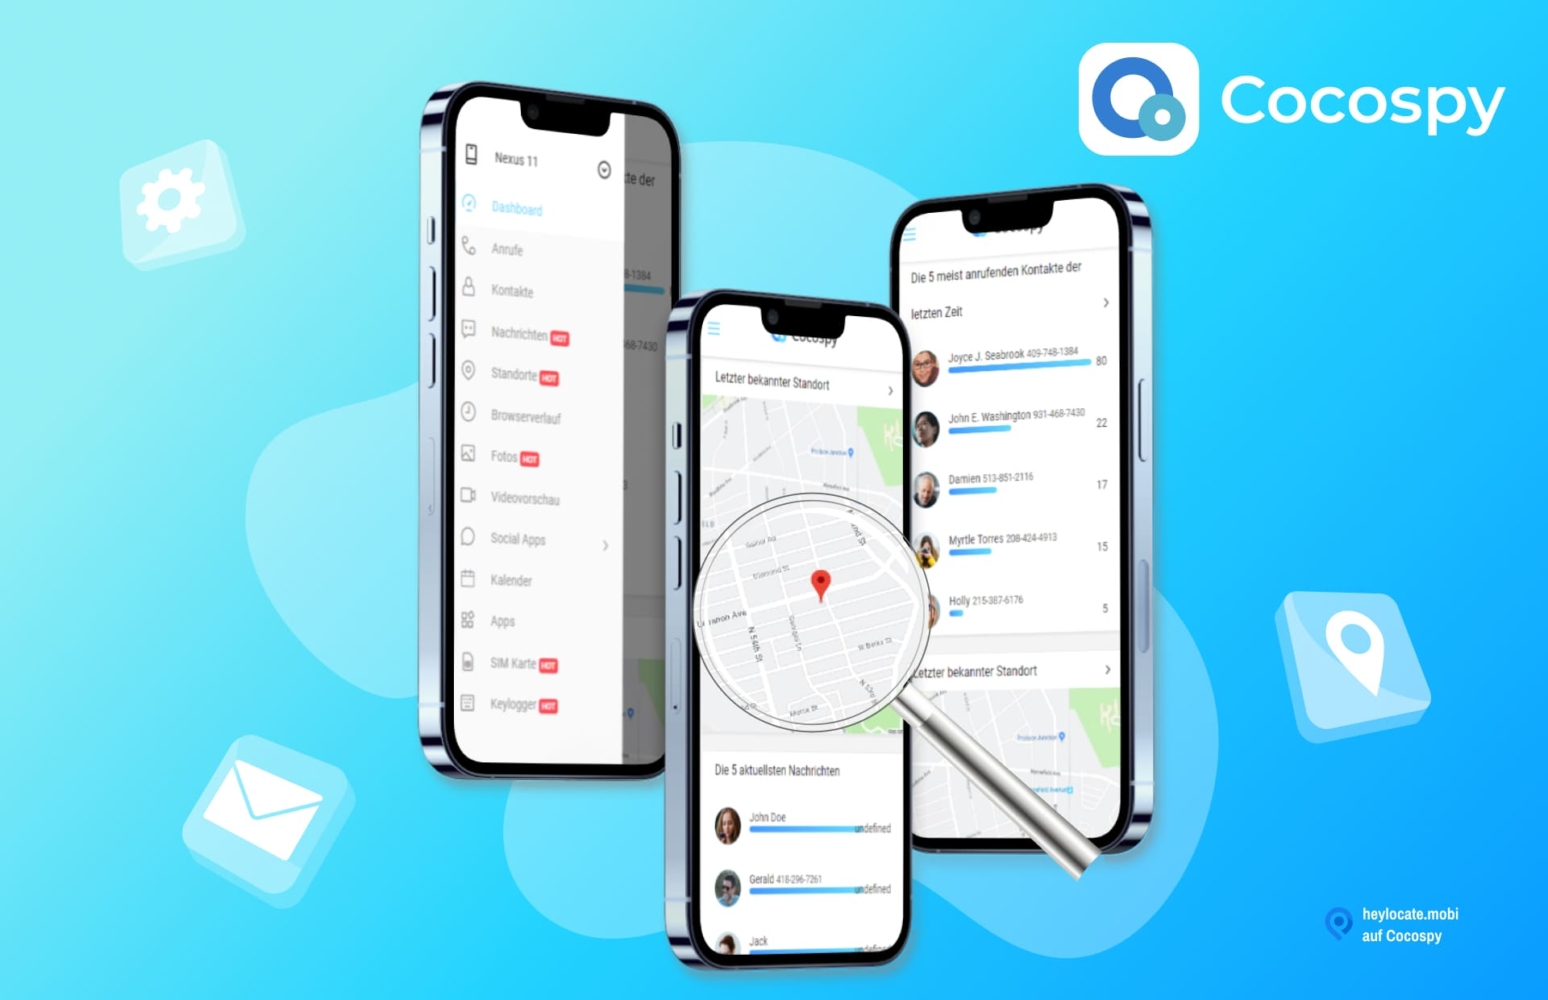 Werbebild von Cocospy, das die Oberfläche der App auf Smartphones zeigt. Die Schnittstelle enthält Optionen wie Anrufe, Nachrichten, Standorte und eine Karte, die einen Standort anzeigt.